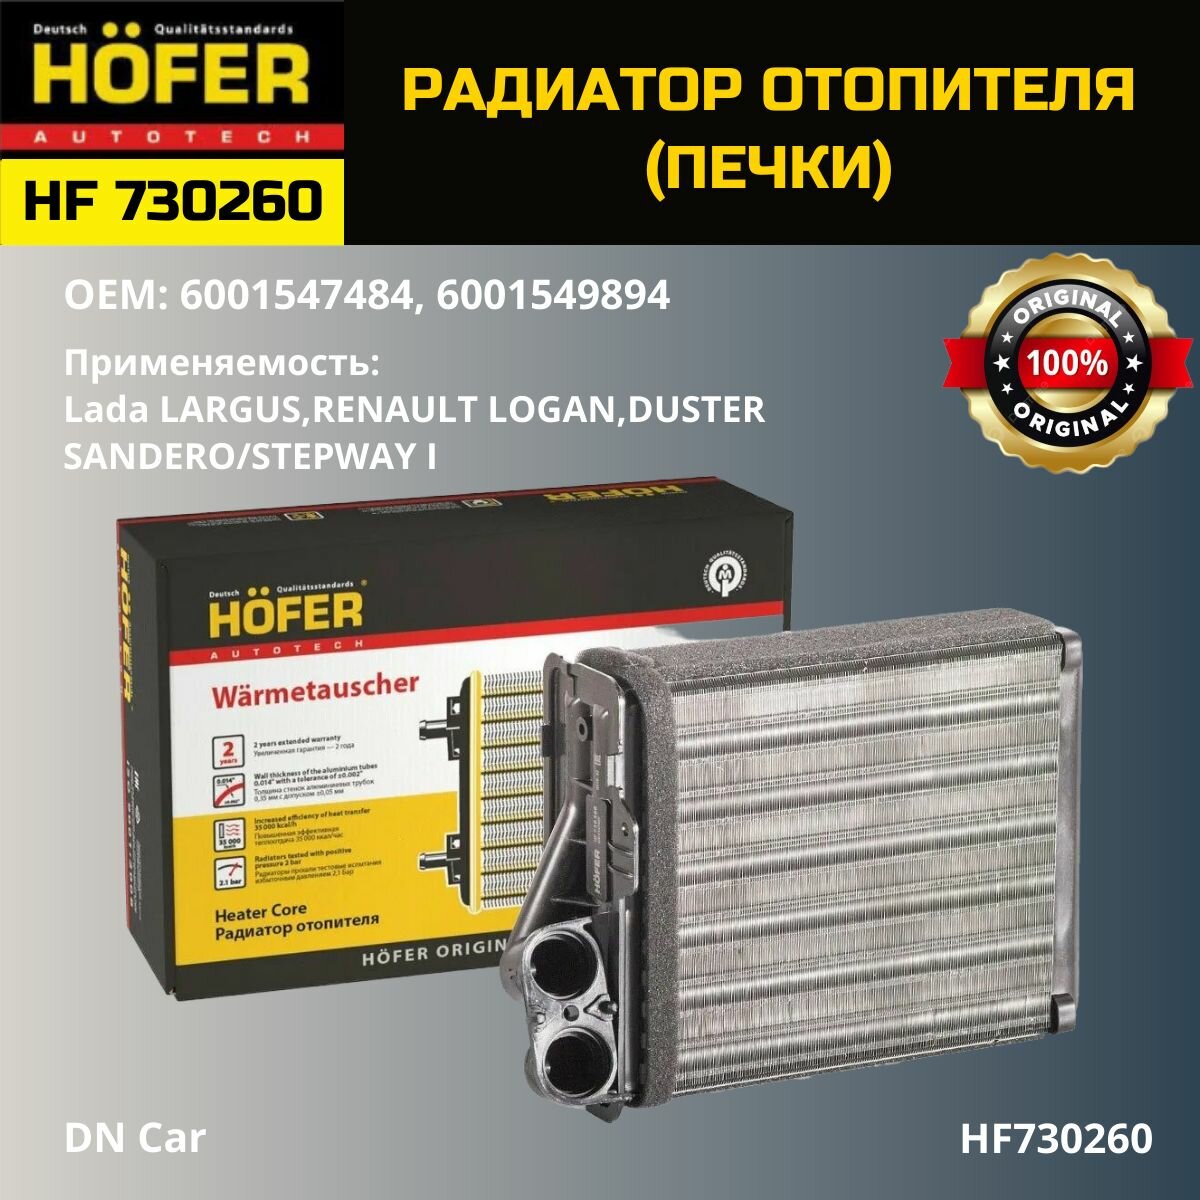 Радиатор отопителя (печки) HOFER для а/м Ларгус (12-)/ Рено Логан (04-)/Дастер (10-)/ HF730260